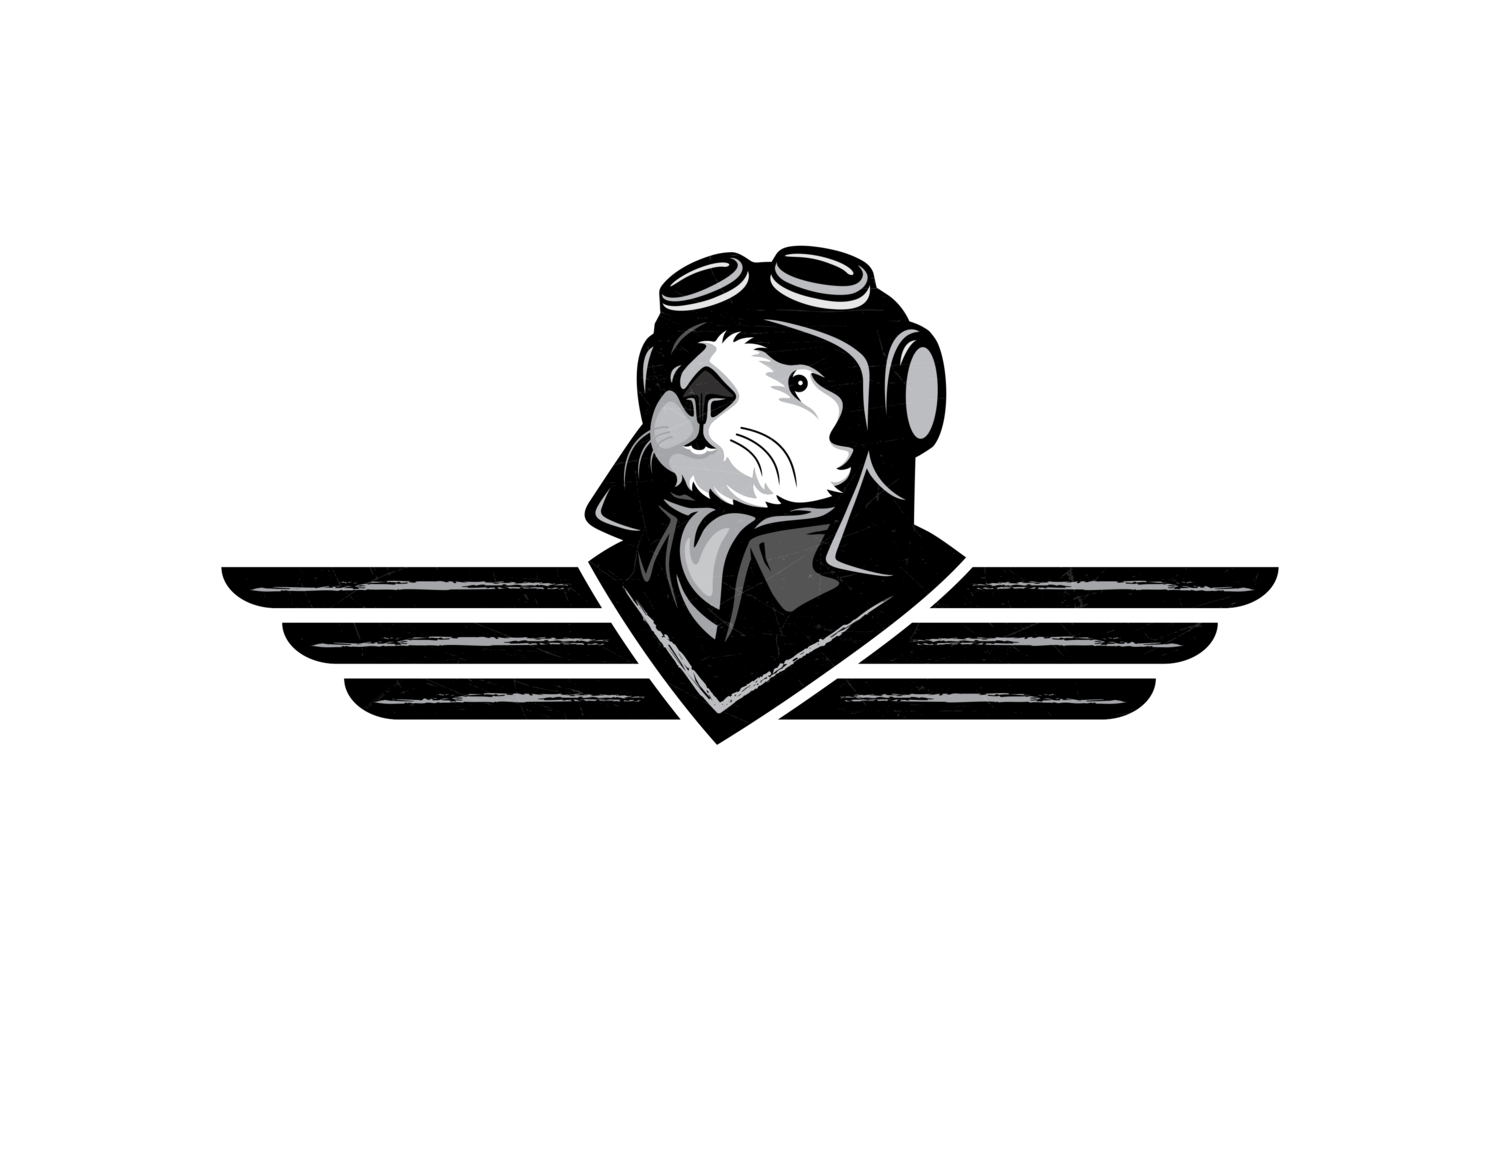 The Flying Otter